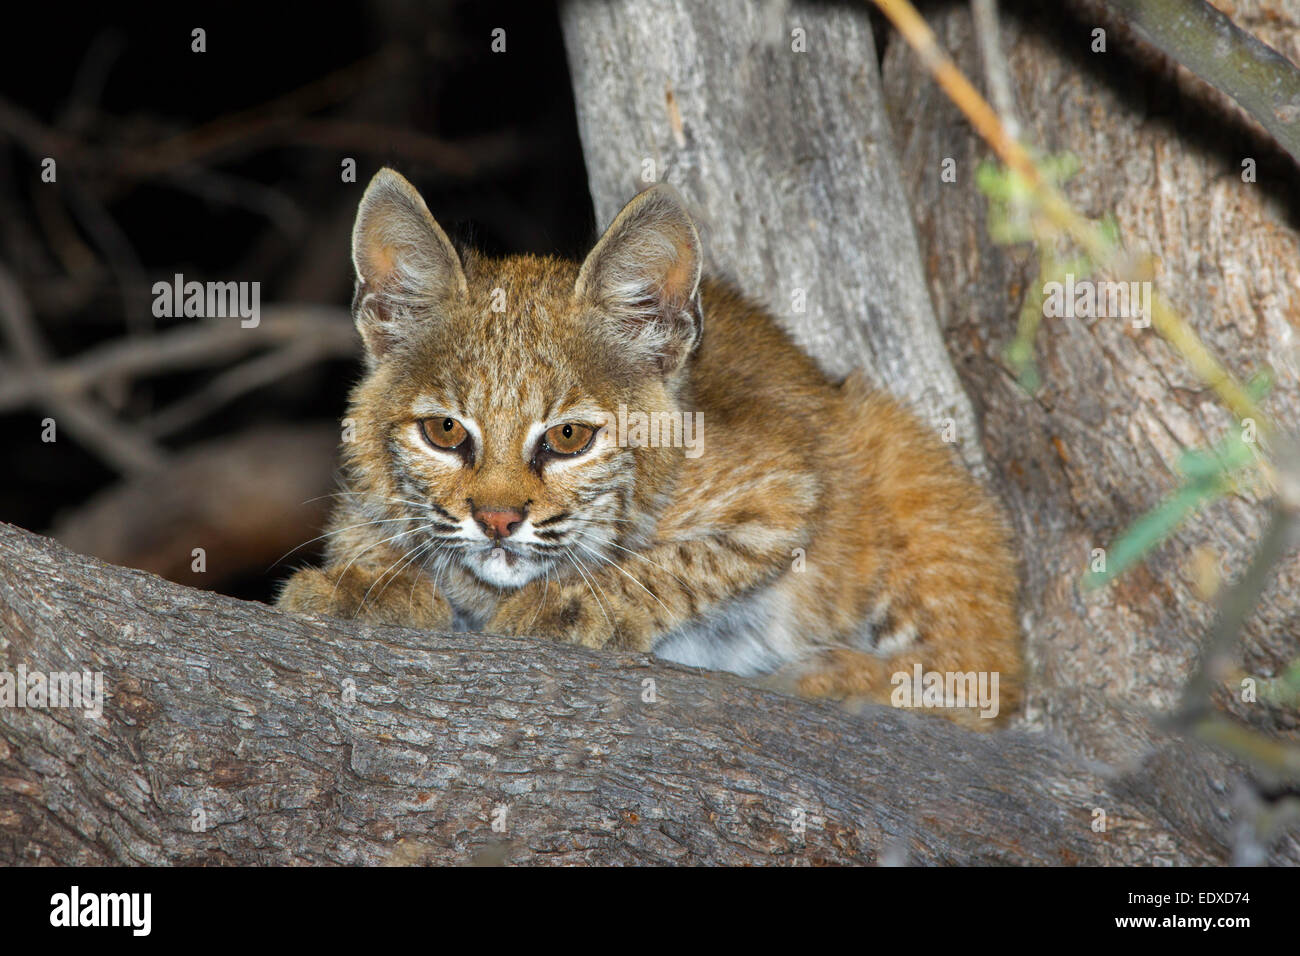 Le lynx roux Lynx rufus Tucson, Arizona, United States 20 août les jeunes ou le chaton de Mesquite Tree. Félidés Banque D'Images